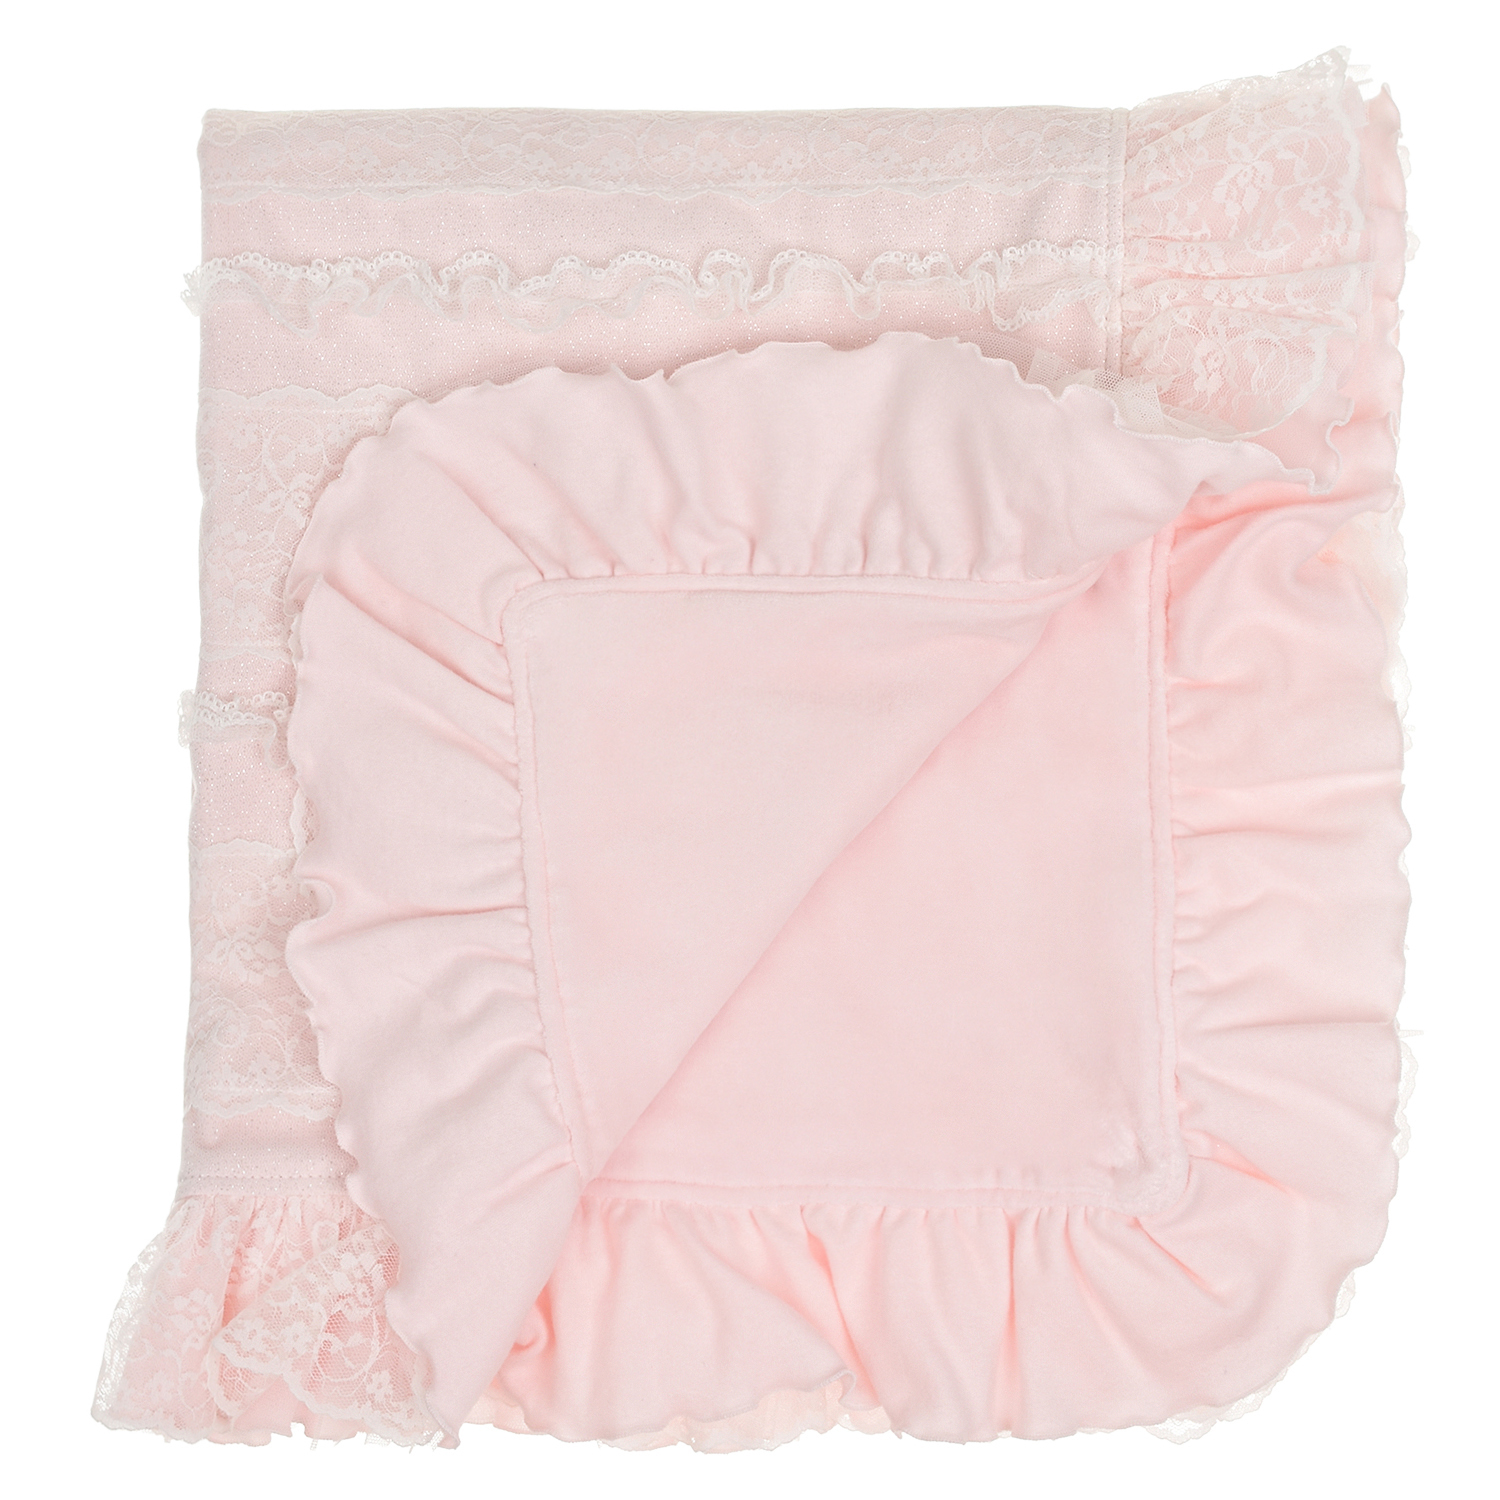 Розовый плед с белой кружевной отделкой Aletta детский, размер unica - фото 3